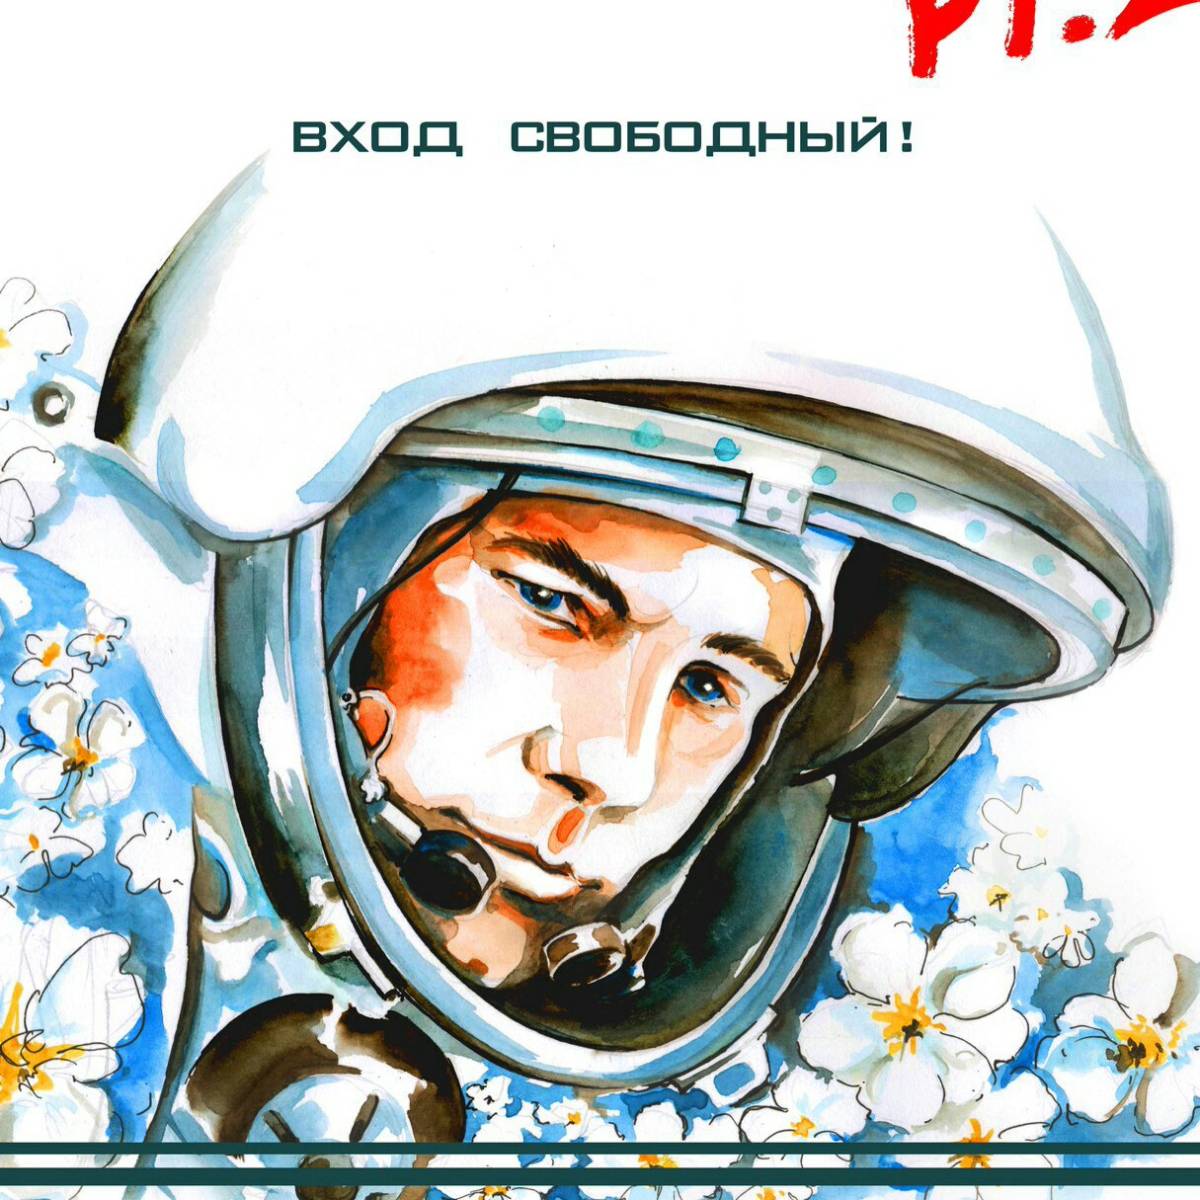 Картинки про день космонавтики. Гагарин космонавт. Звездный сын земли Гагарин.